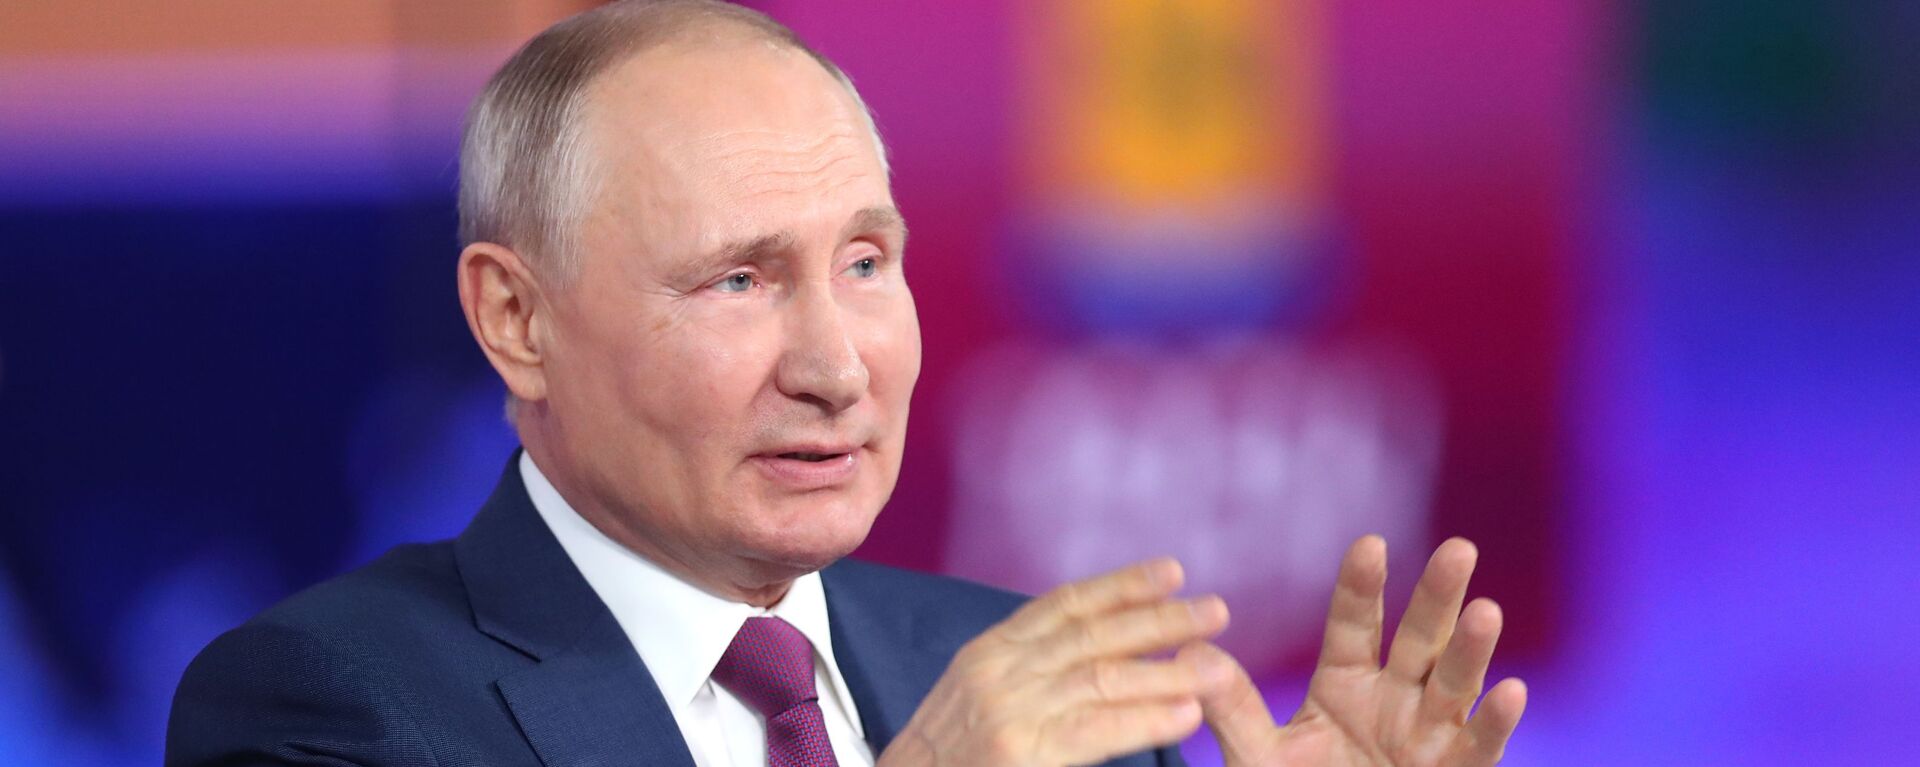 Giao lưu trực tuyến với Tổng thống Nga Vladimir Putin 2021 - Sputnik Việt Nam, 1920, 14.07.2021